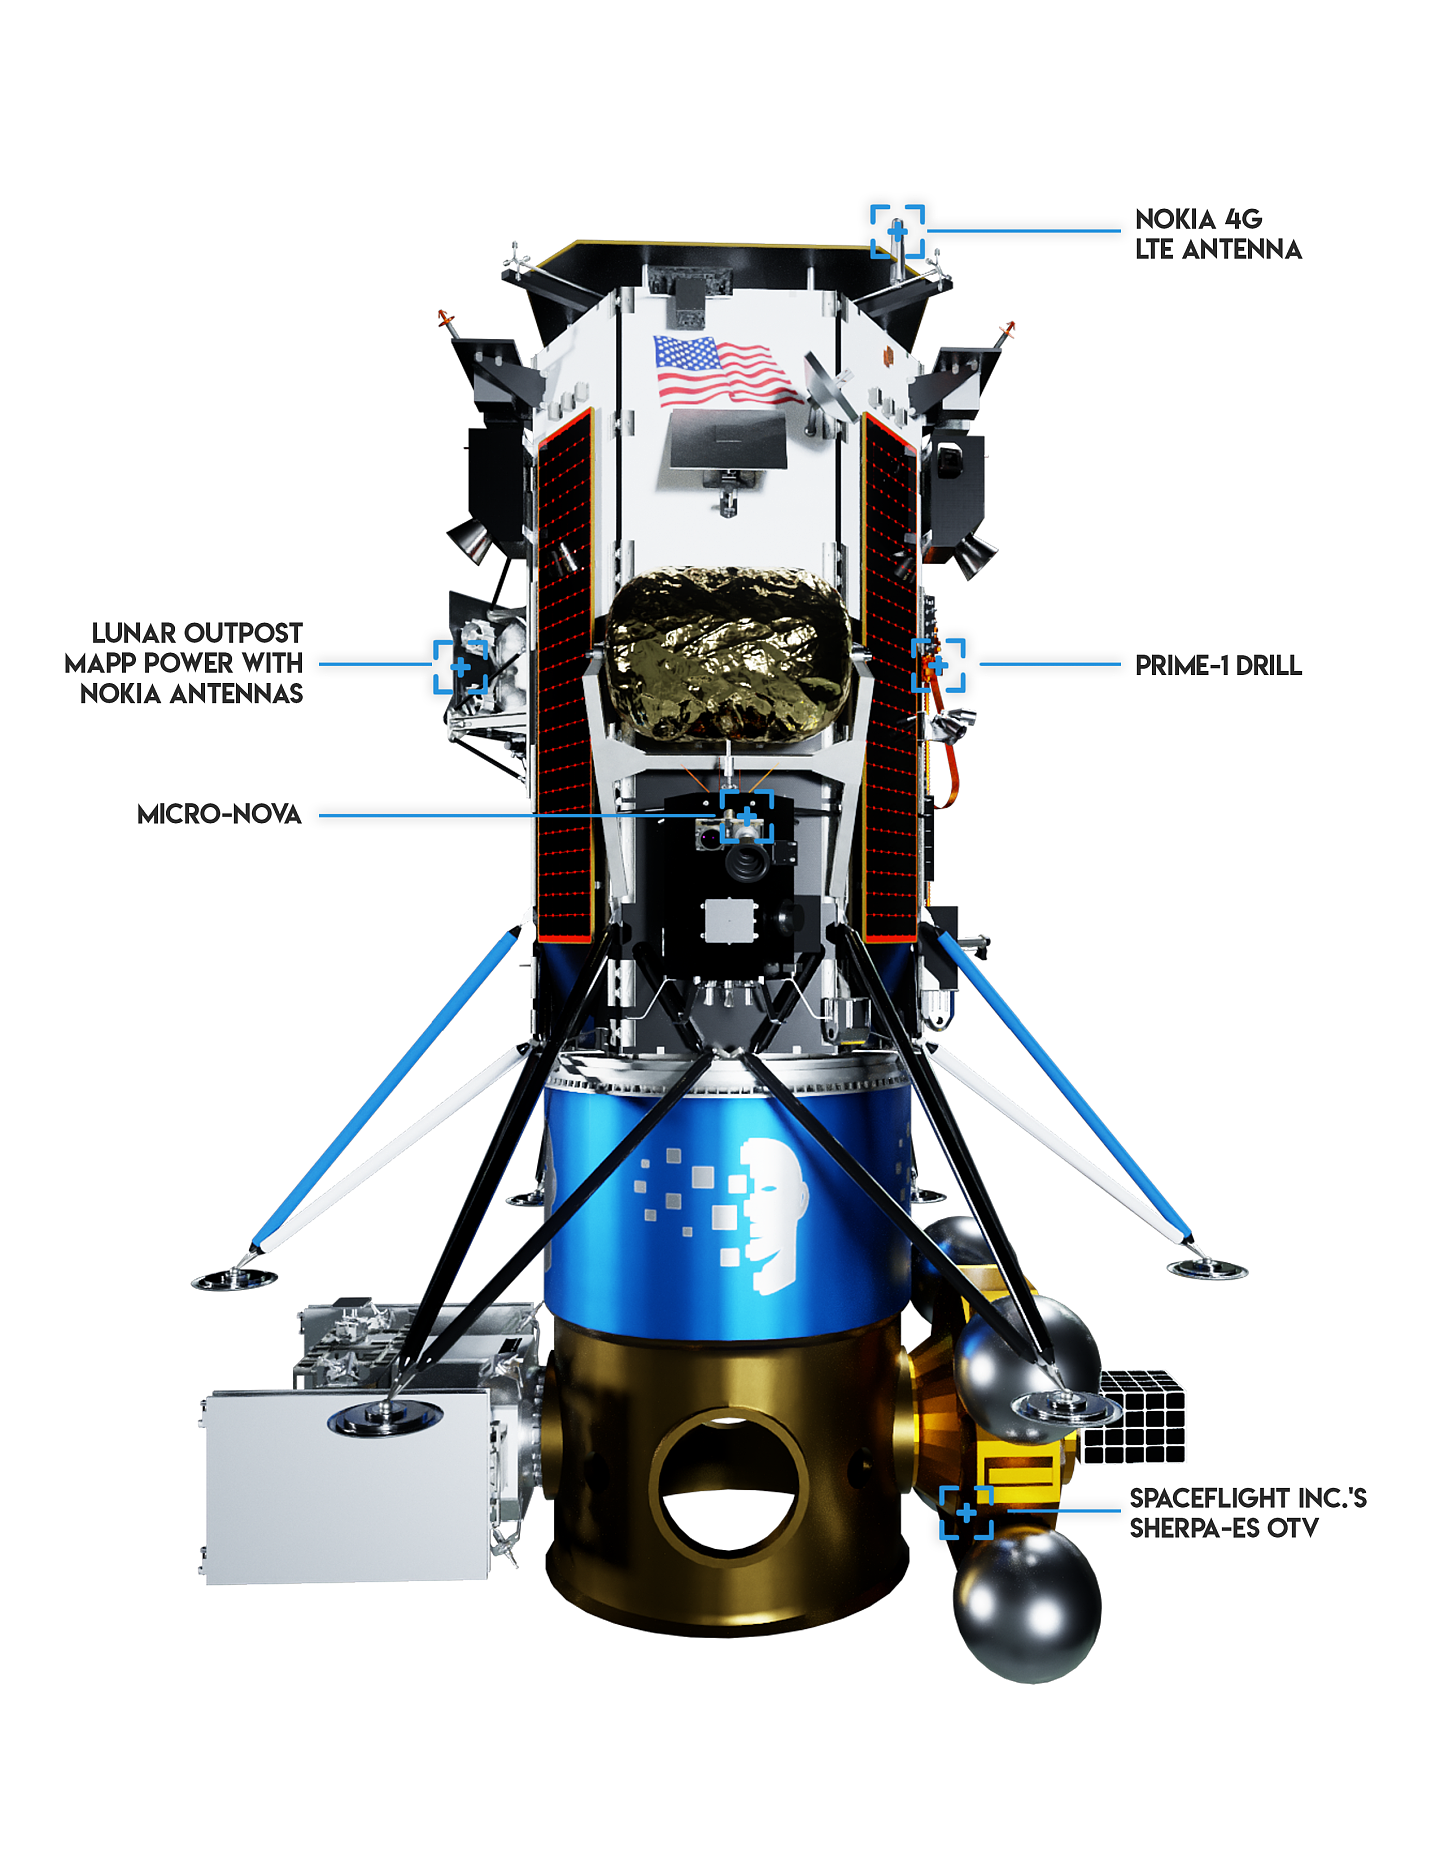 Spaceflight明年将为客户提供月球轨道有效载荷运送服务 - 2